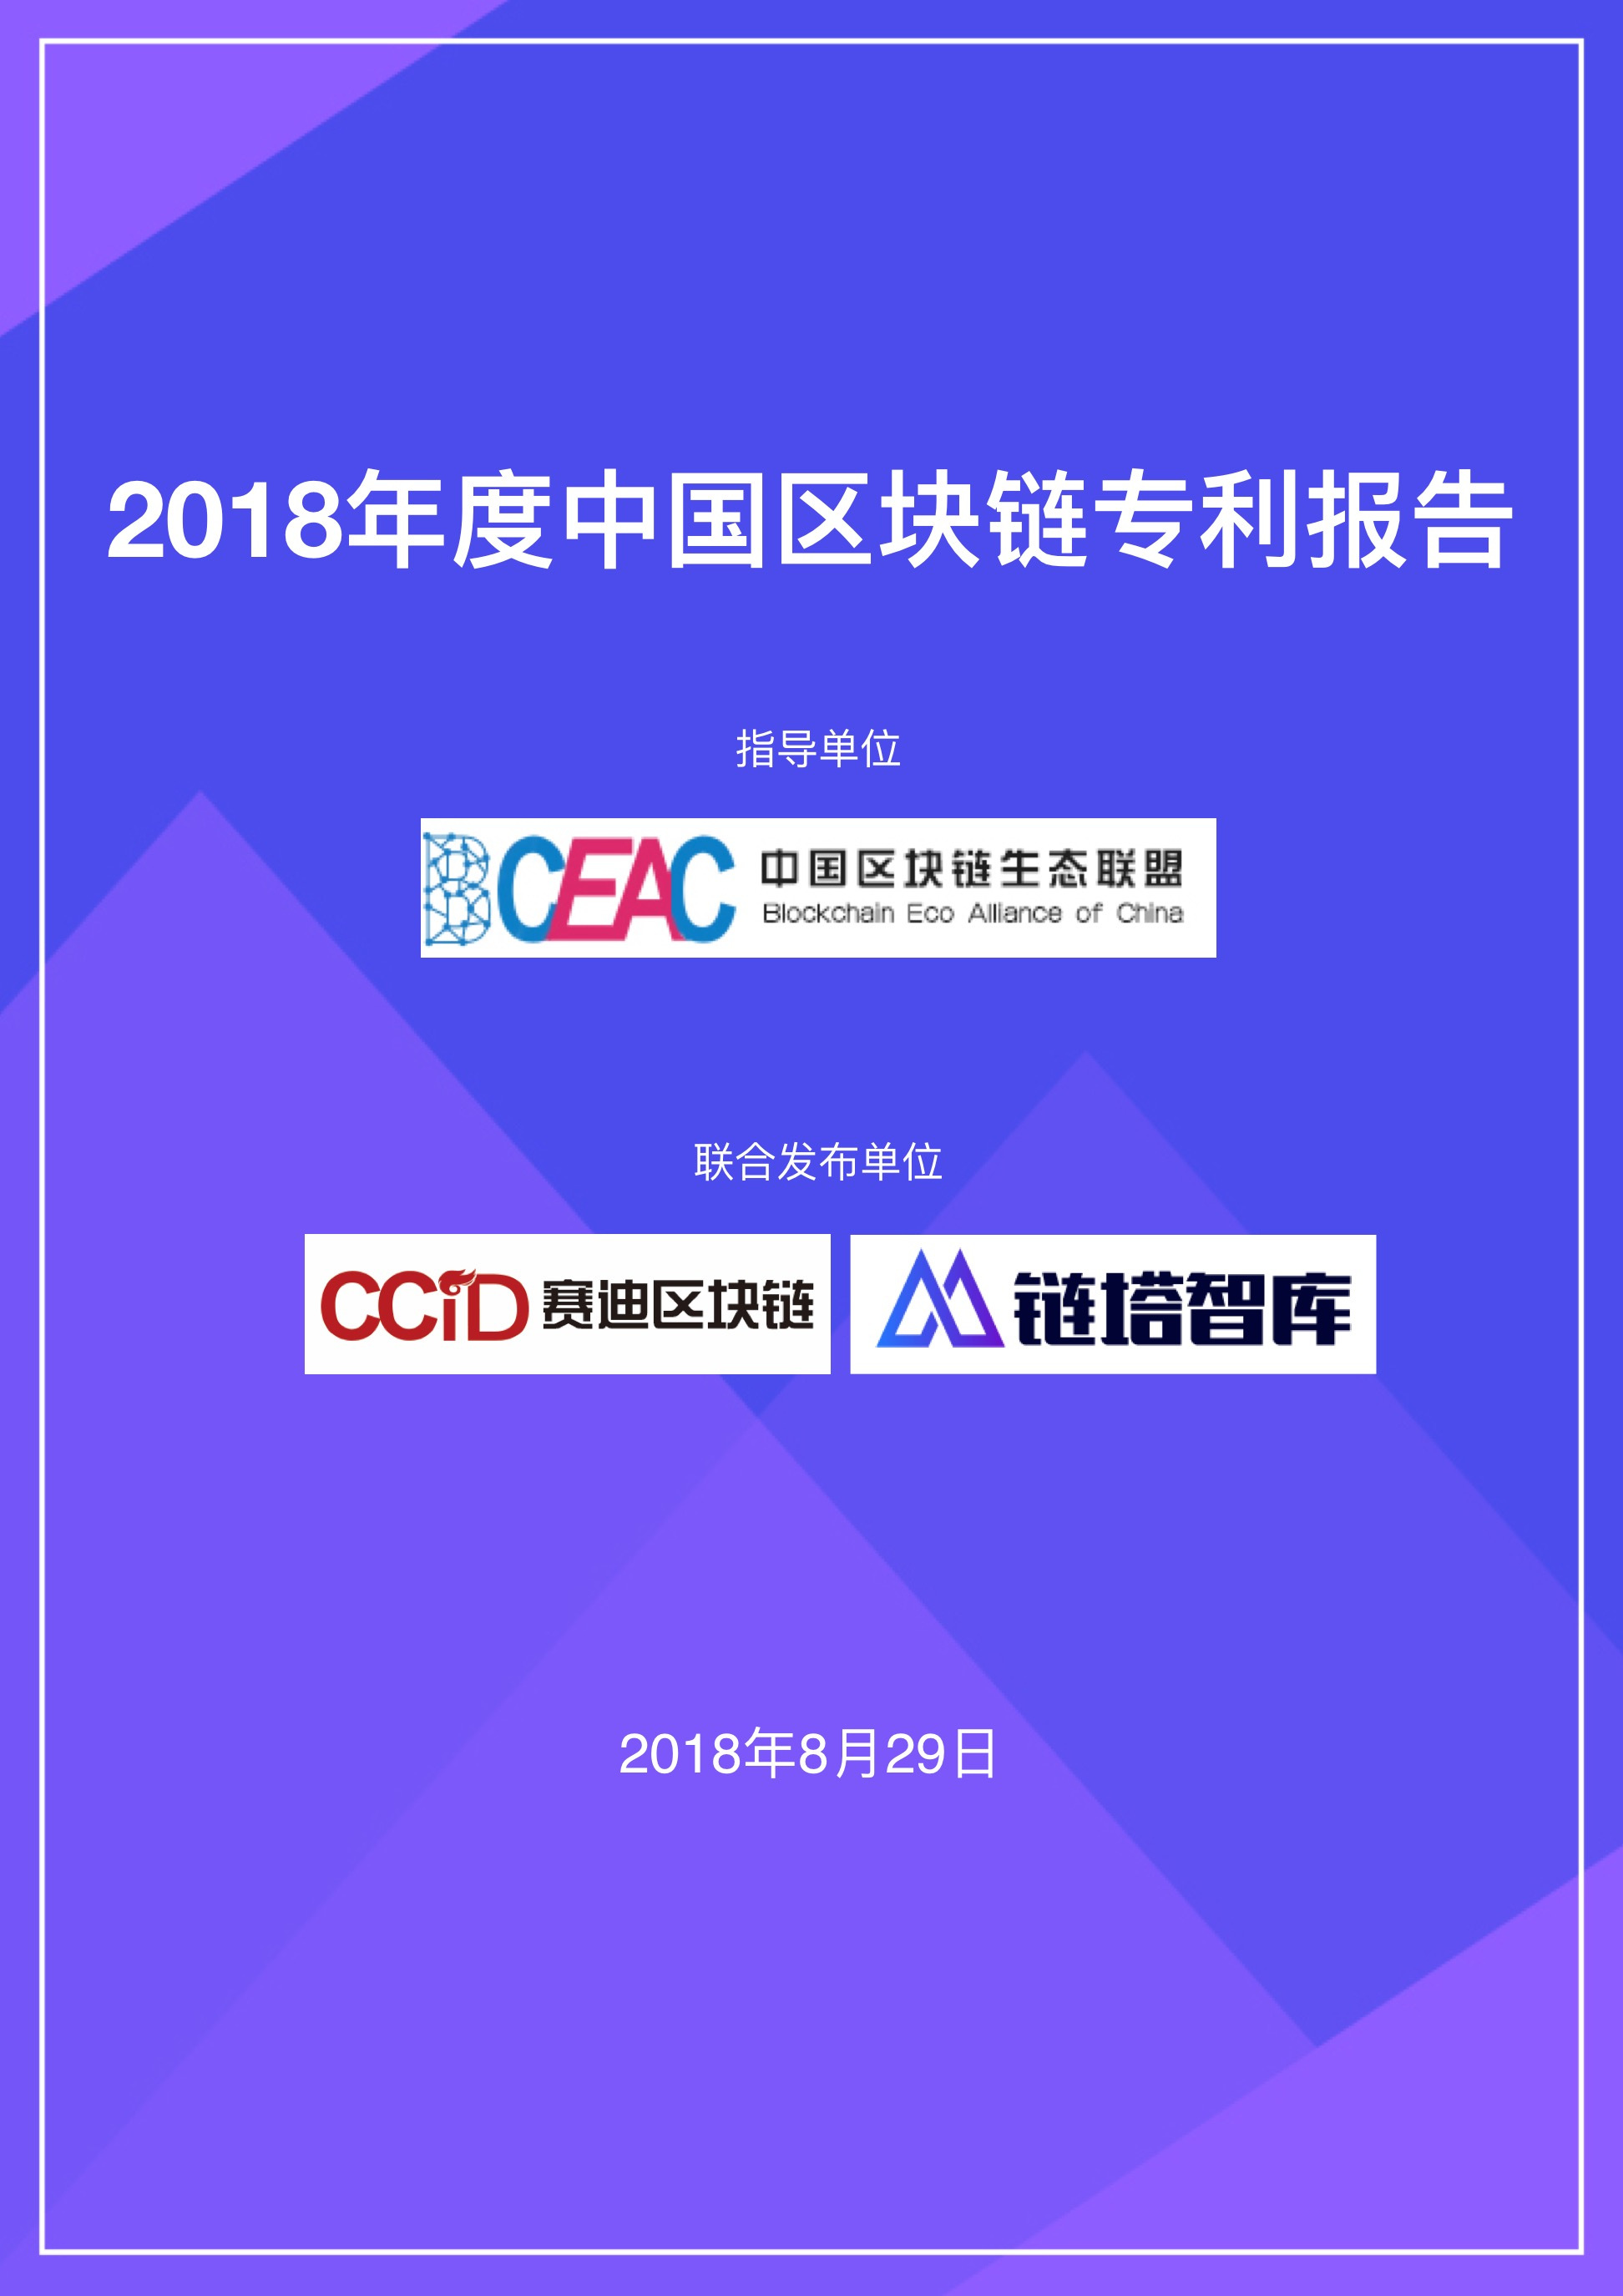 2018年度中国区块链专利报告 | 赛迪区块链研究院&链塔智库配图(1)